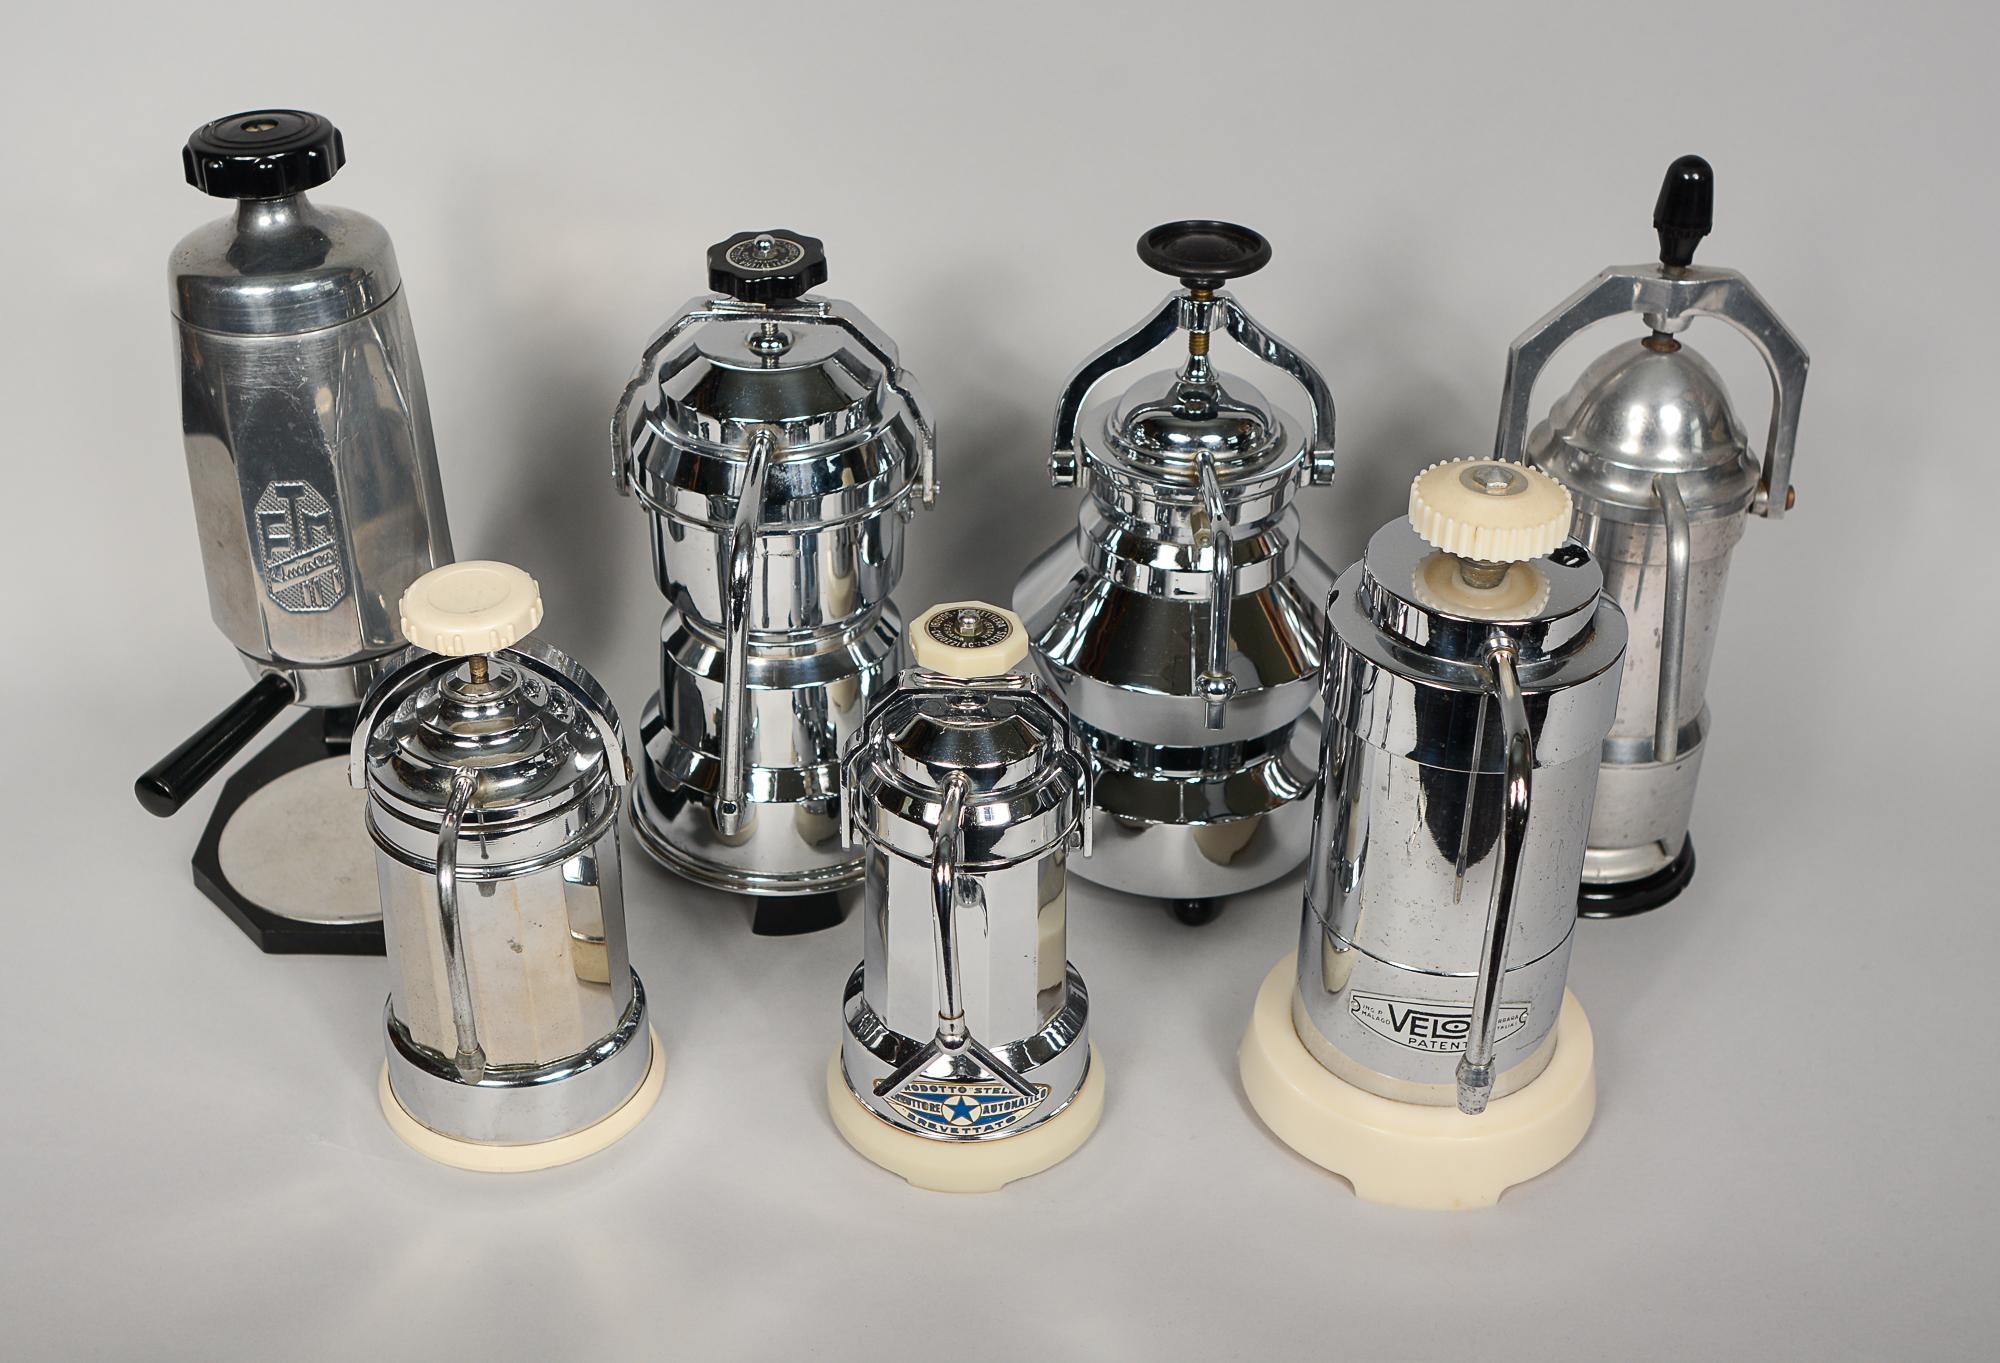 Collectional de sept machines à espresso vintage. Cinq d'entre eux ont une finition chromée et les deux autres sont en aluminium. Il y a un Paradiso, un Velox, un Prodotto Stella, un Zenit, un FTM, une Caffettiera Stella et un sans marque. Ils sont